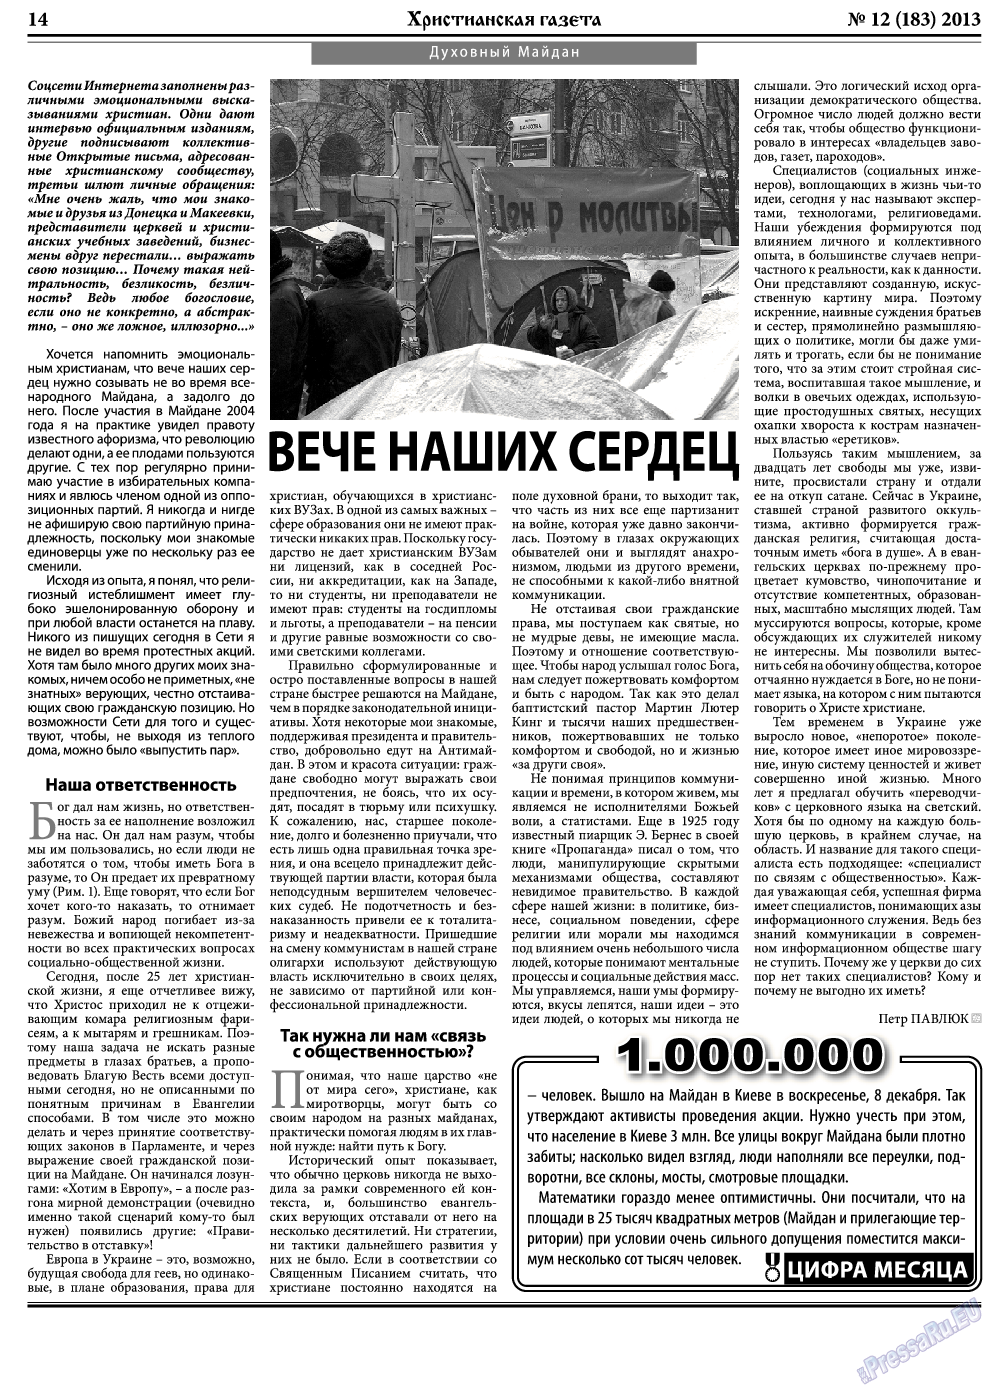 Христианская газета, газета. 2013 №12 стр.22